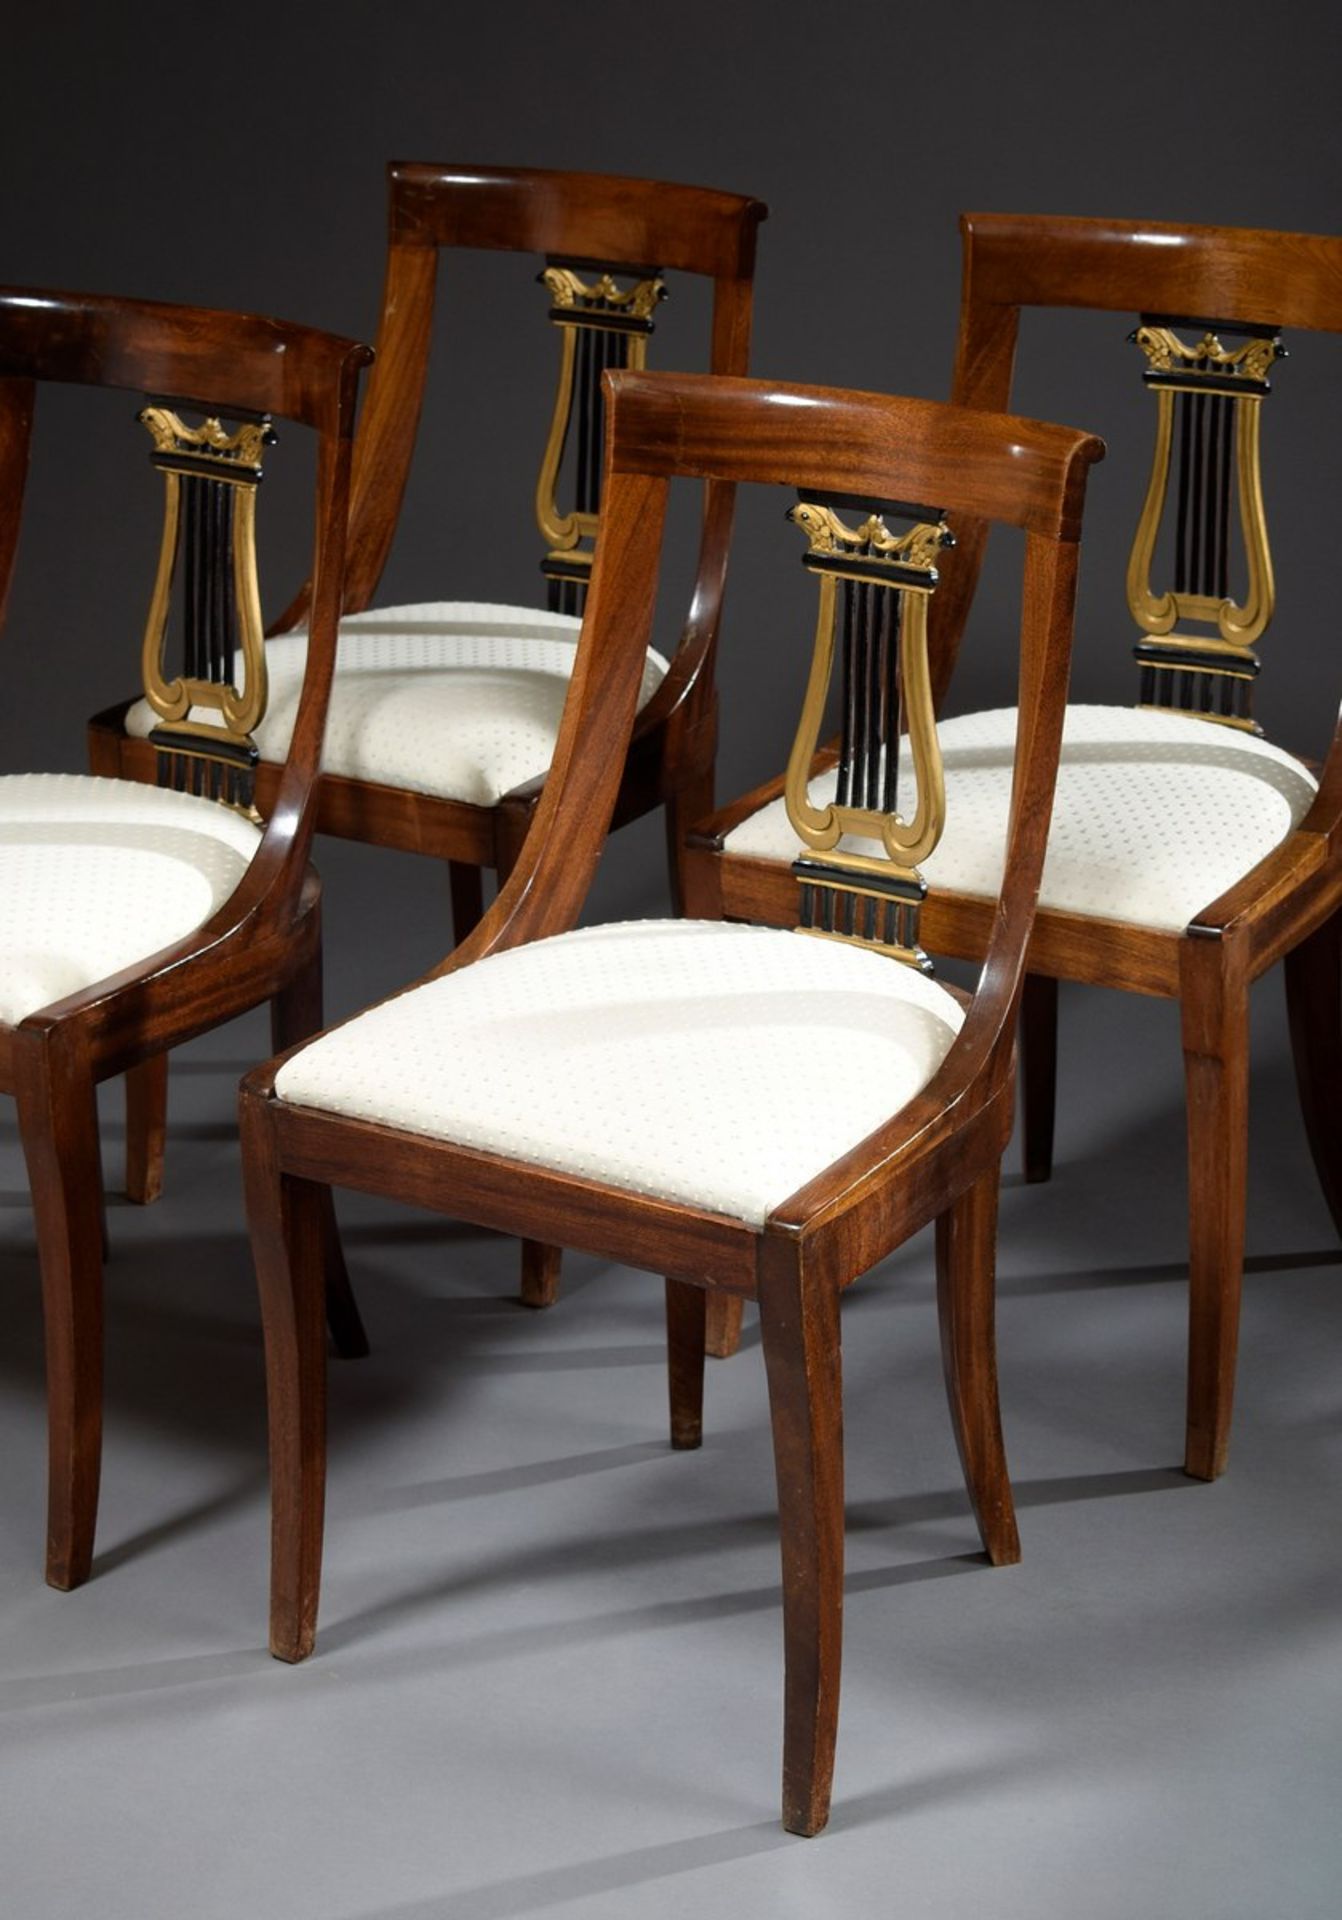 4 Stühle im Empire Stil mit geschnitztem Lyramotiv in der Lehne und hellen Sitzpolstern, Nussbaum,